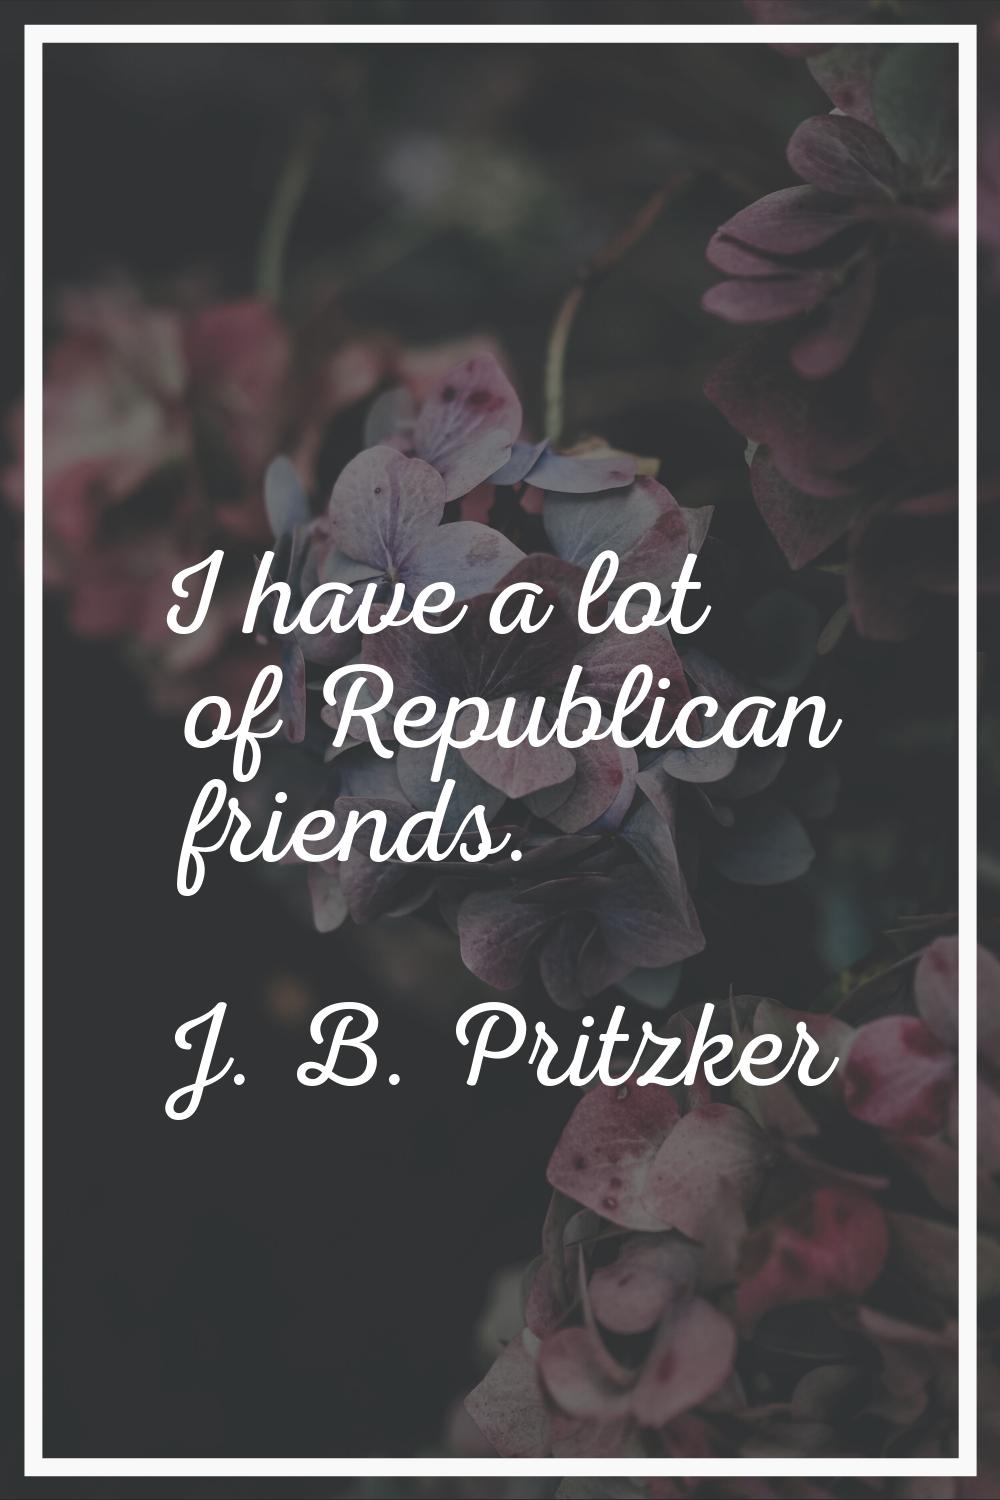 I have a lot of Republican friends.